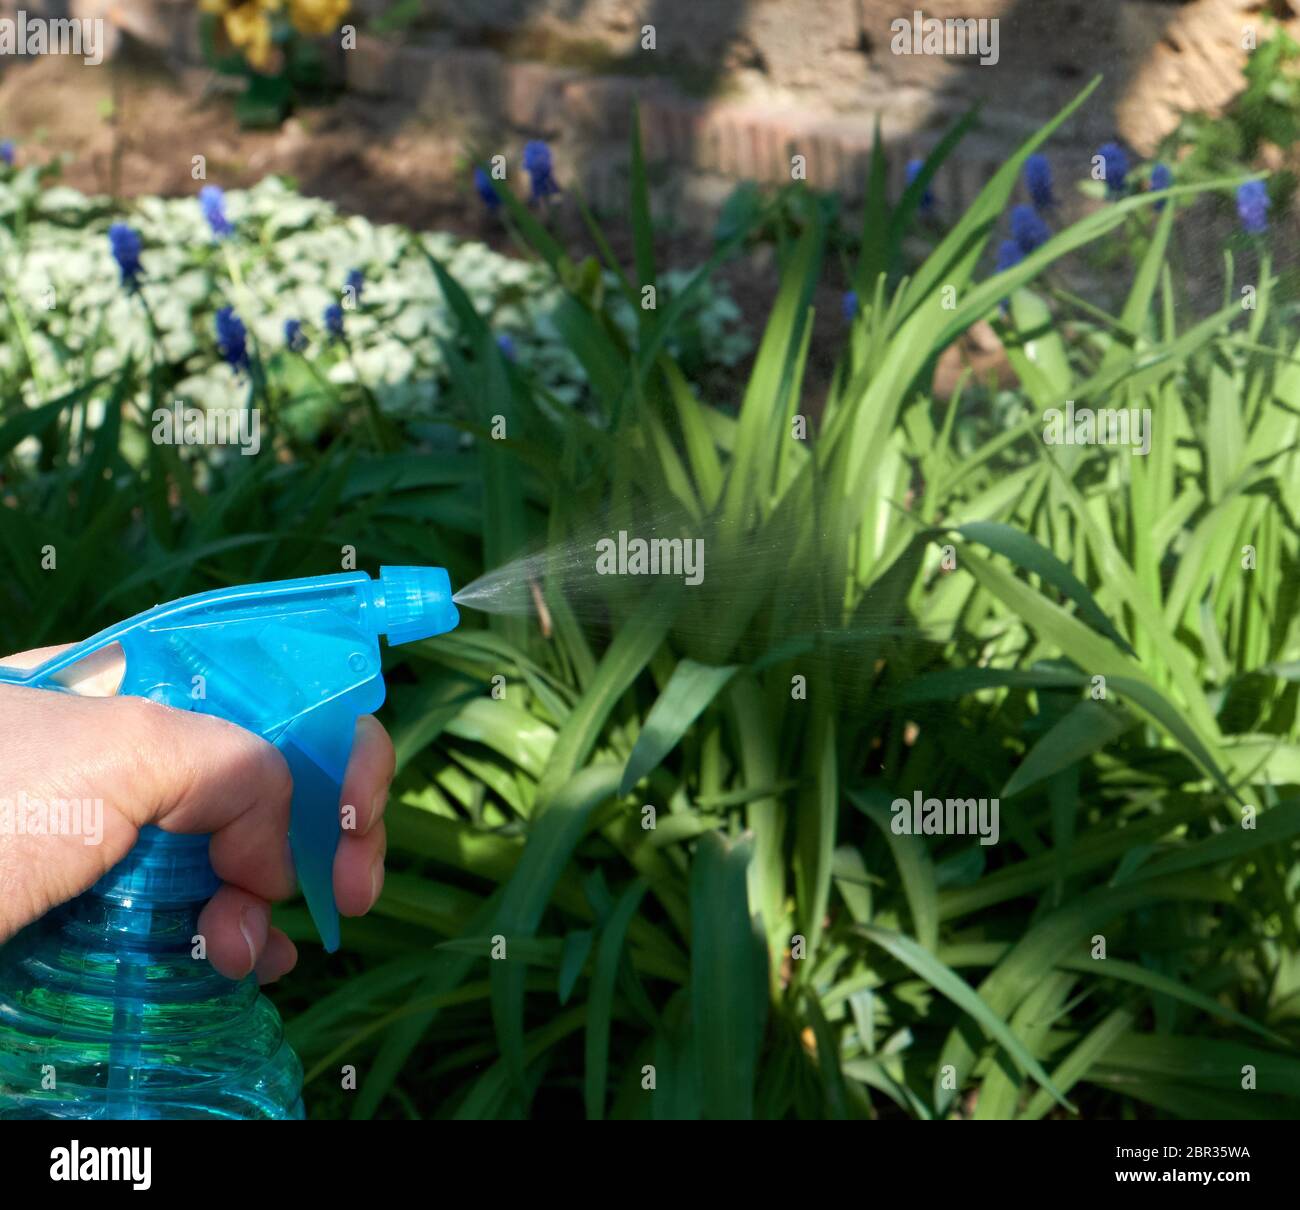 Femme main tenant une bouteille en plastique bleu avec du liquide et la pulvérisation de produits chimiques pour tuer les plantes et les insectes ravageurs, journée de printemps Banque D'Images